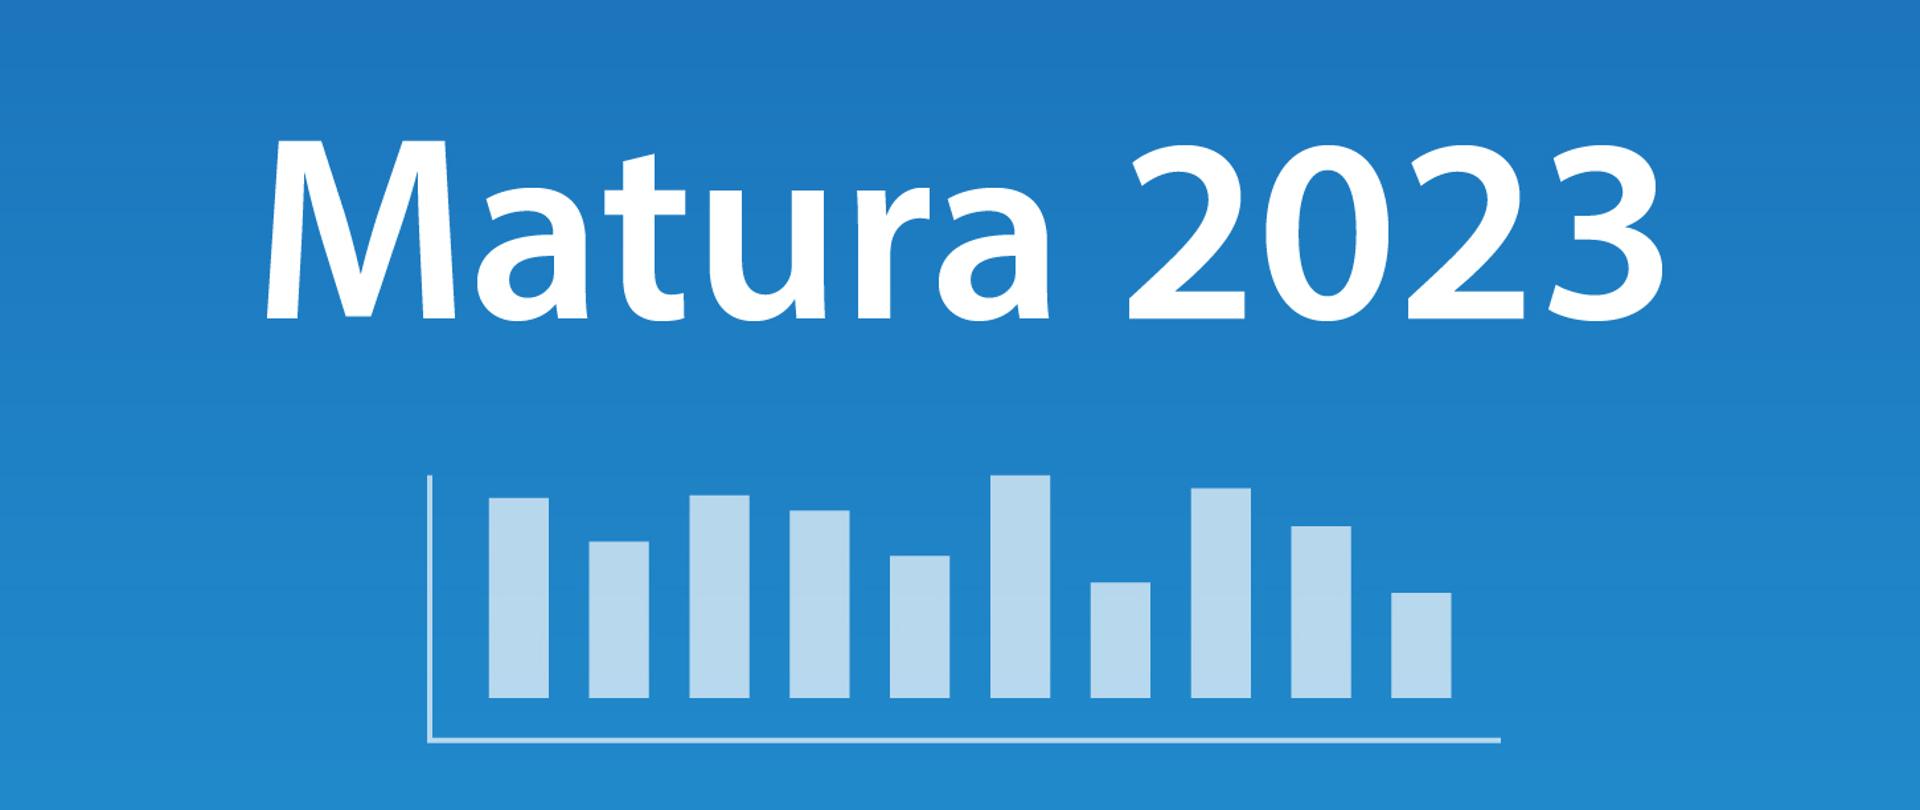 Grafika przestawia napis Matura 2023 na niebieskim tle. Pod napisem słupki symbolizujące wykres.